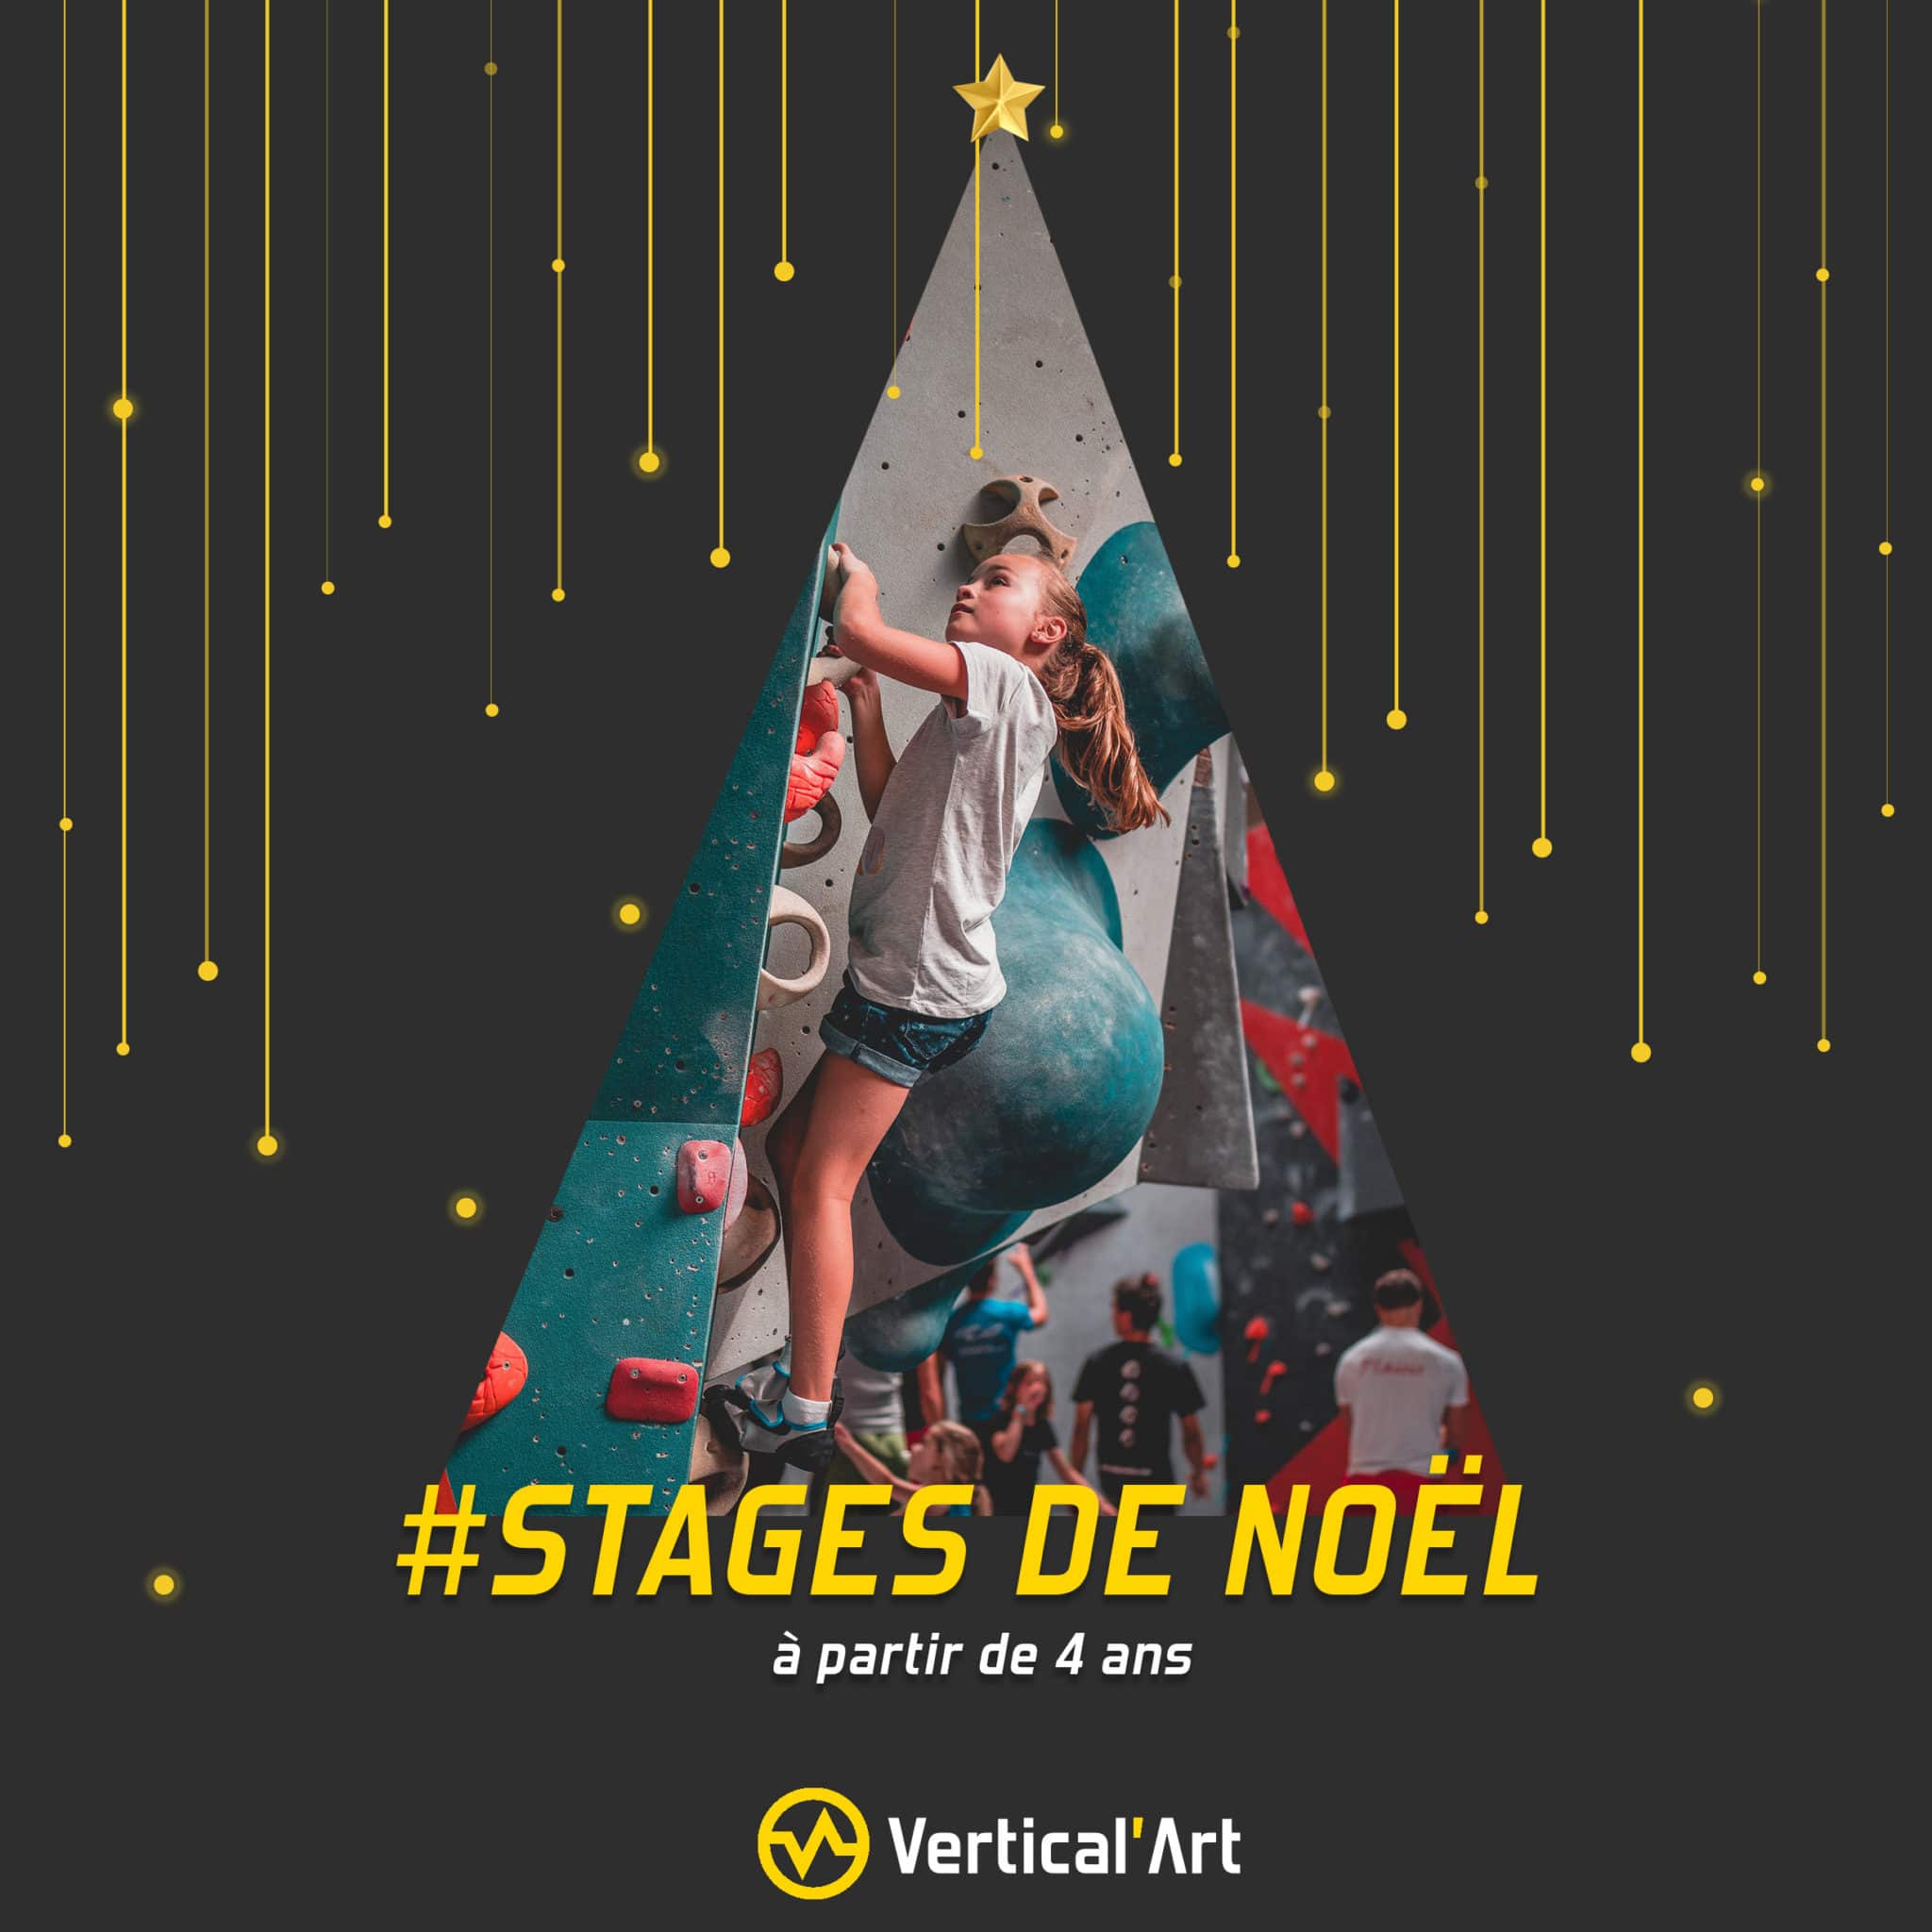 Stages d'escalade enfants Noël 2021, dans toutes vos salles Vertical'Art. A partir de 4 ans, pendant les vacances de Noël.